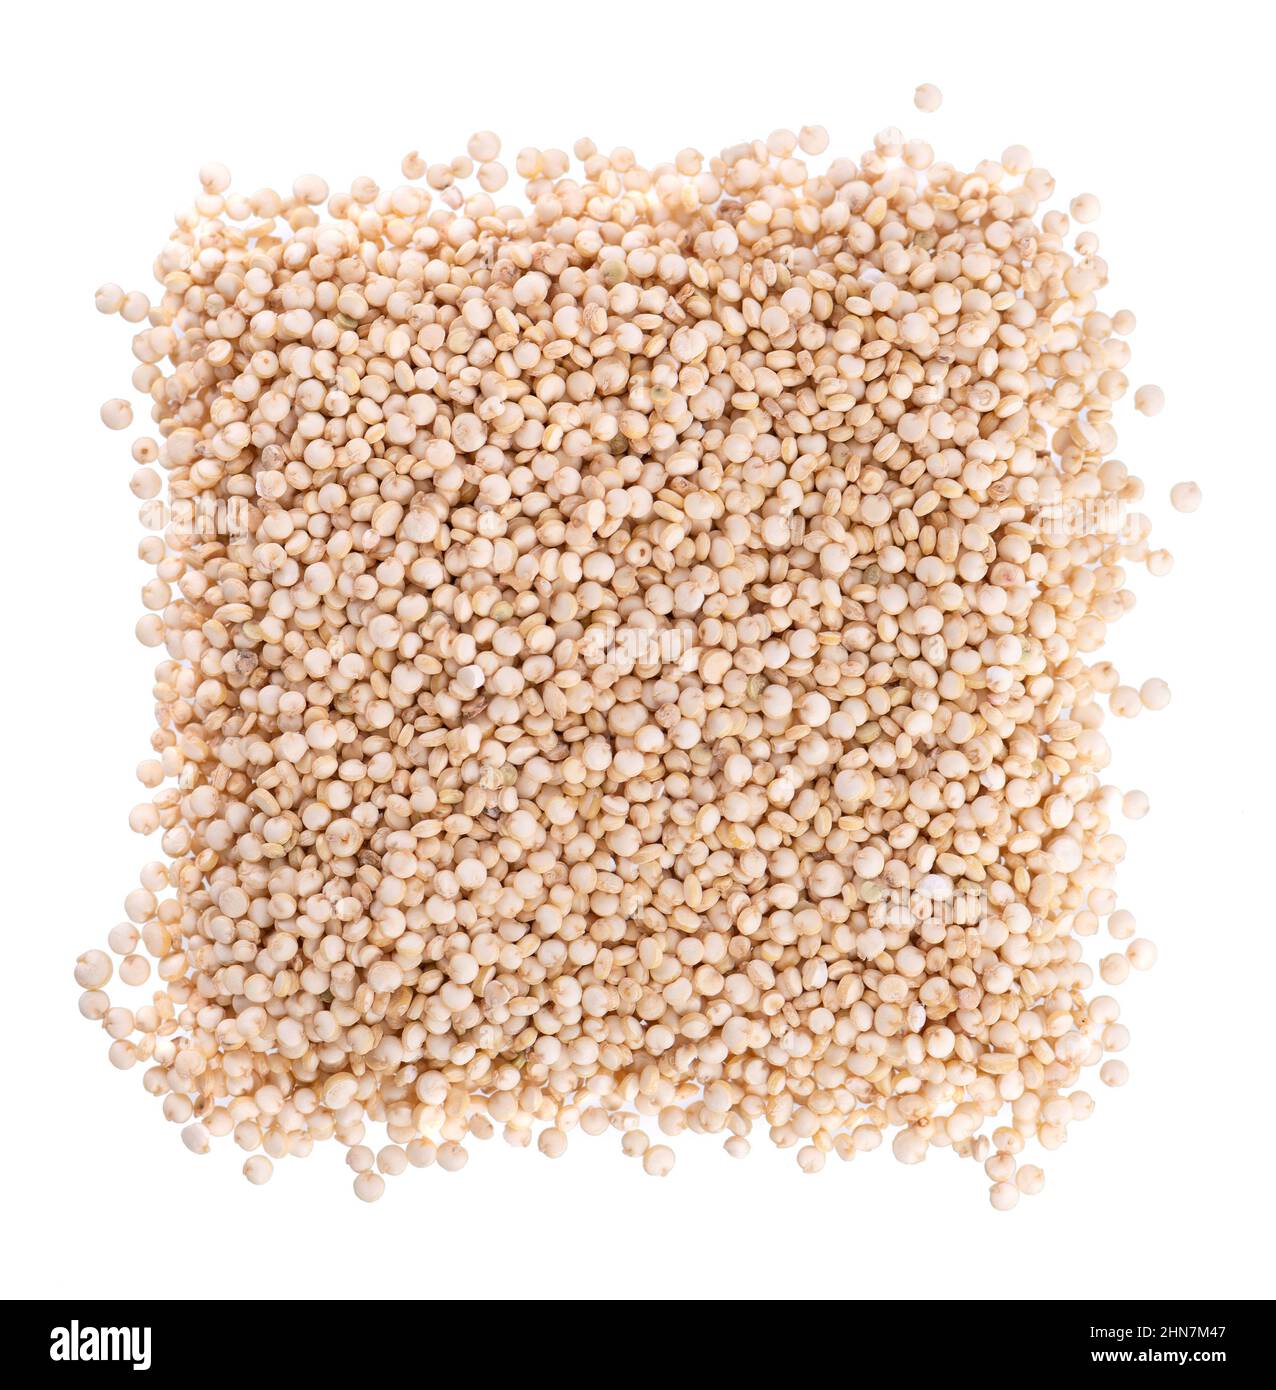 Graines de quinoa blanc isolées sur fond blanc. Pile de kinwa brut. Vue de dessus Banque D'Images